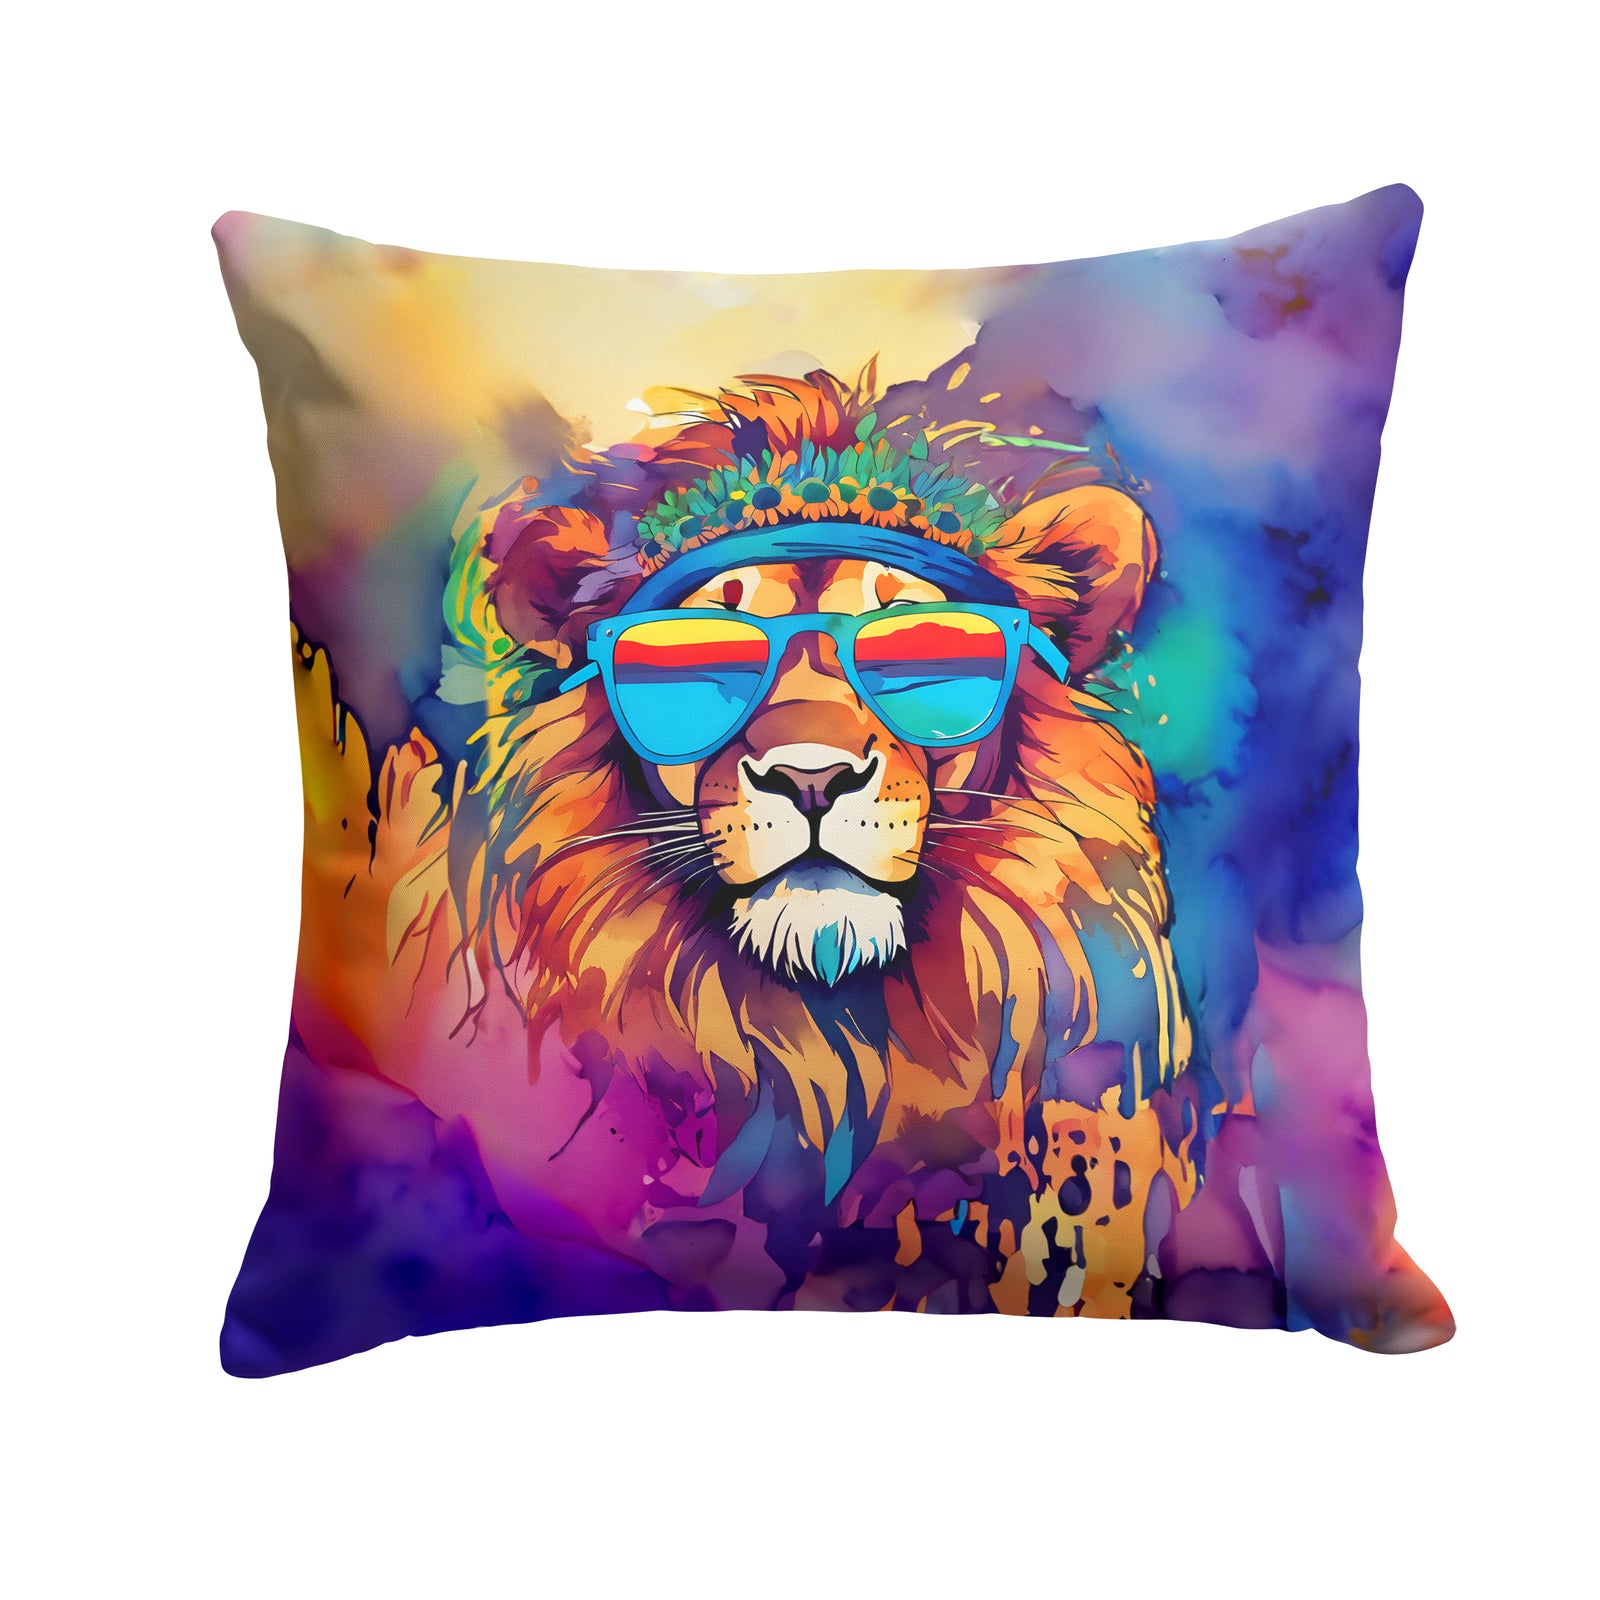 Buy this Hippie Animal Lion Throw Pillow